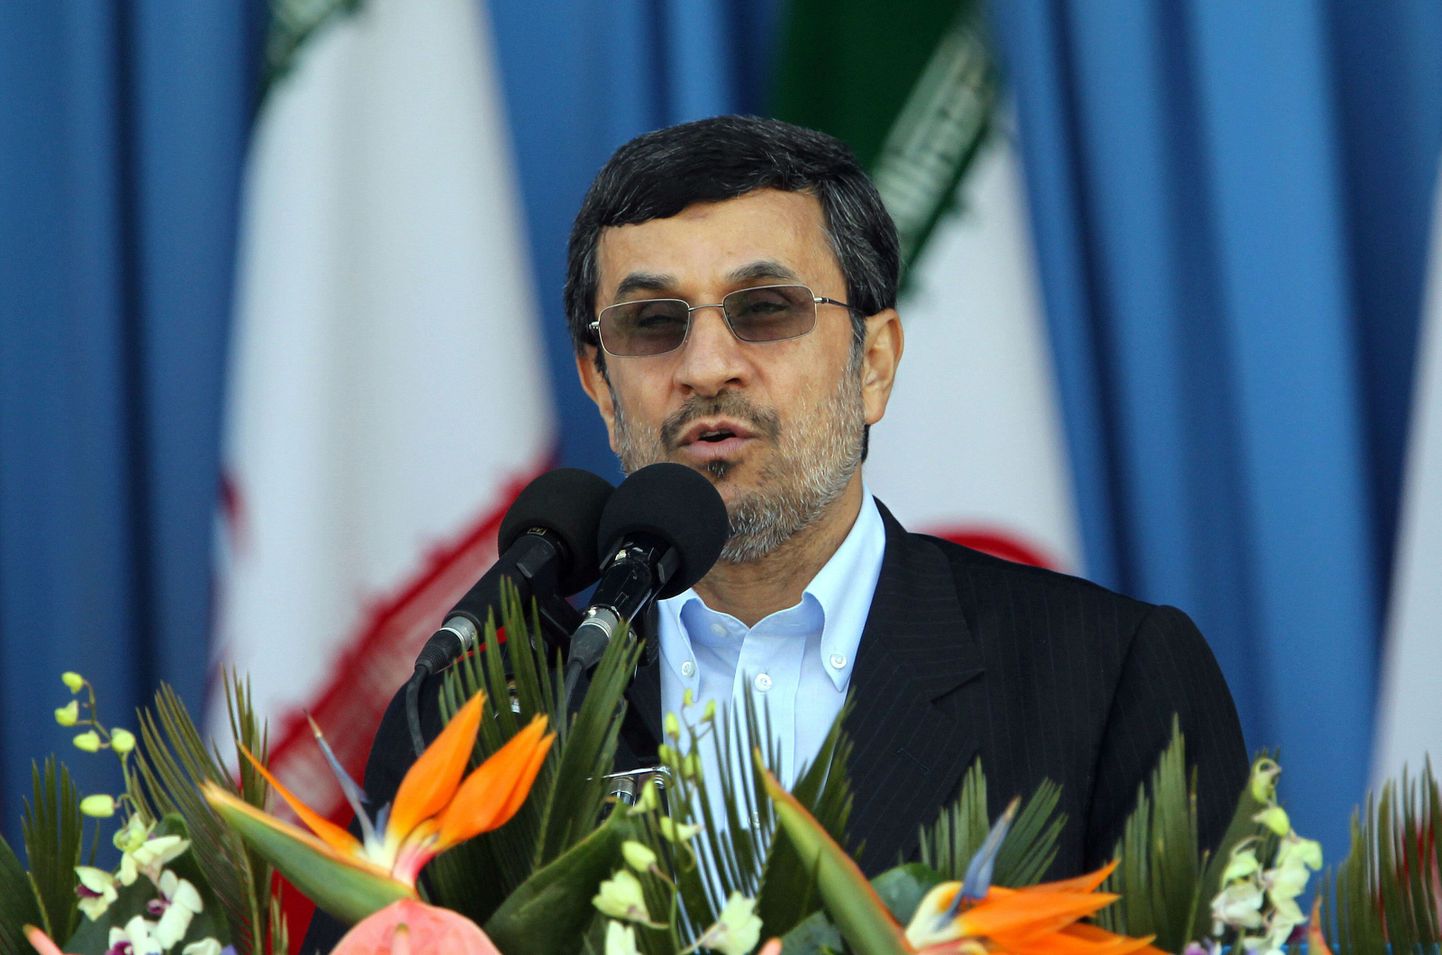 Iraani president Mahmoud Ahmadinejad Londoni olümpiamängudele tõenäoliselt ei pääse.